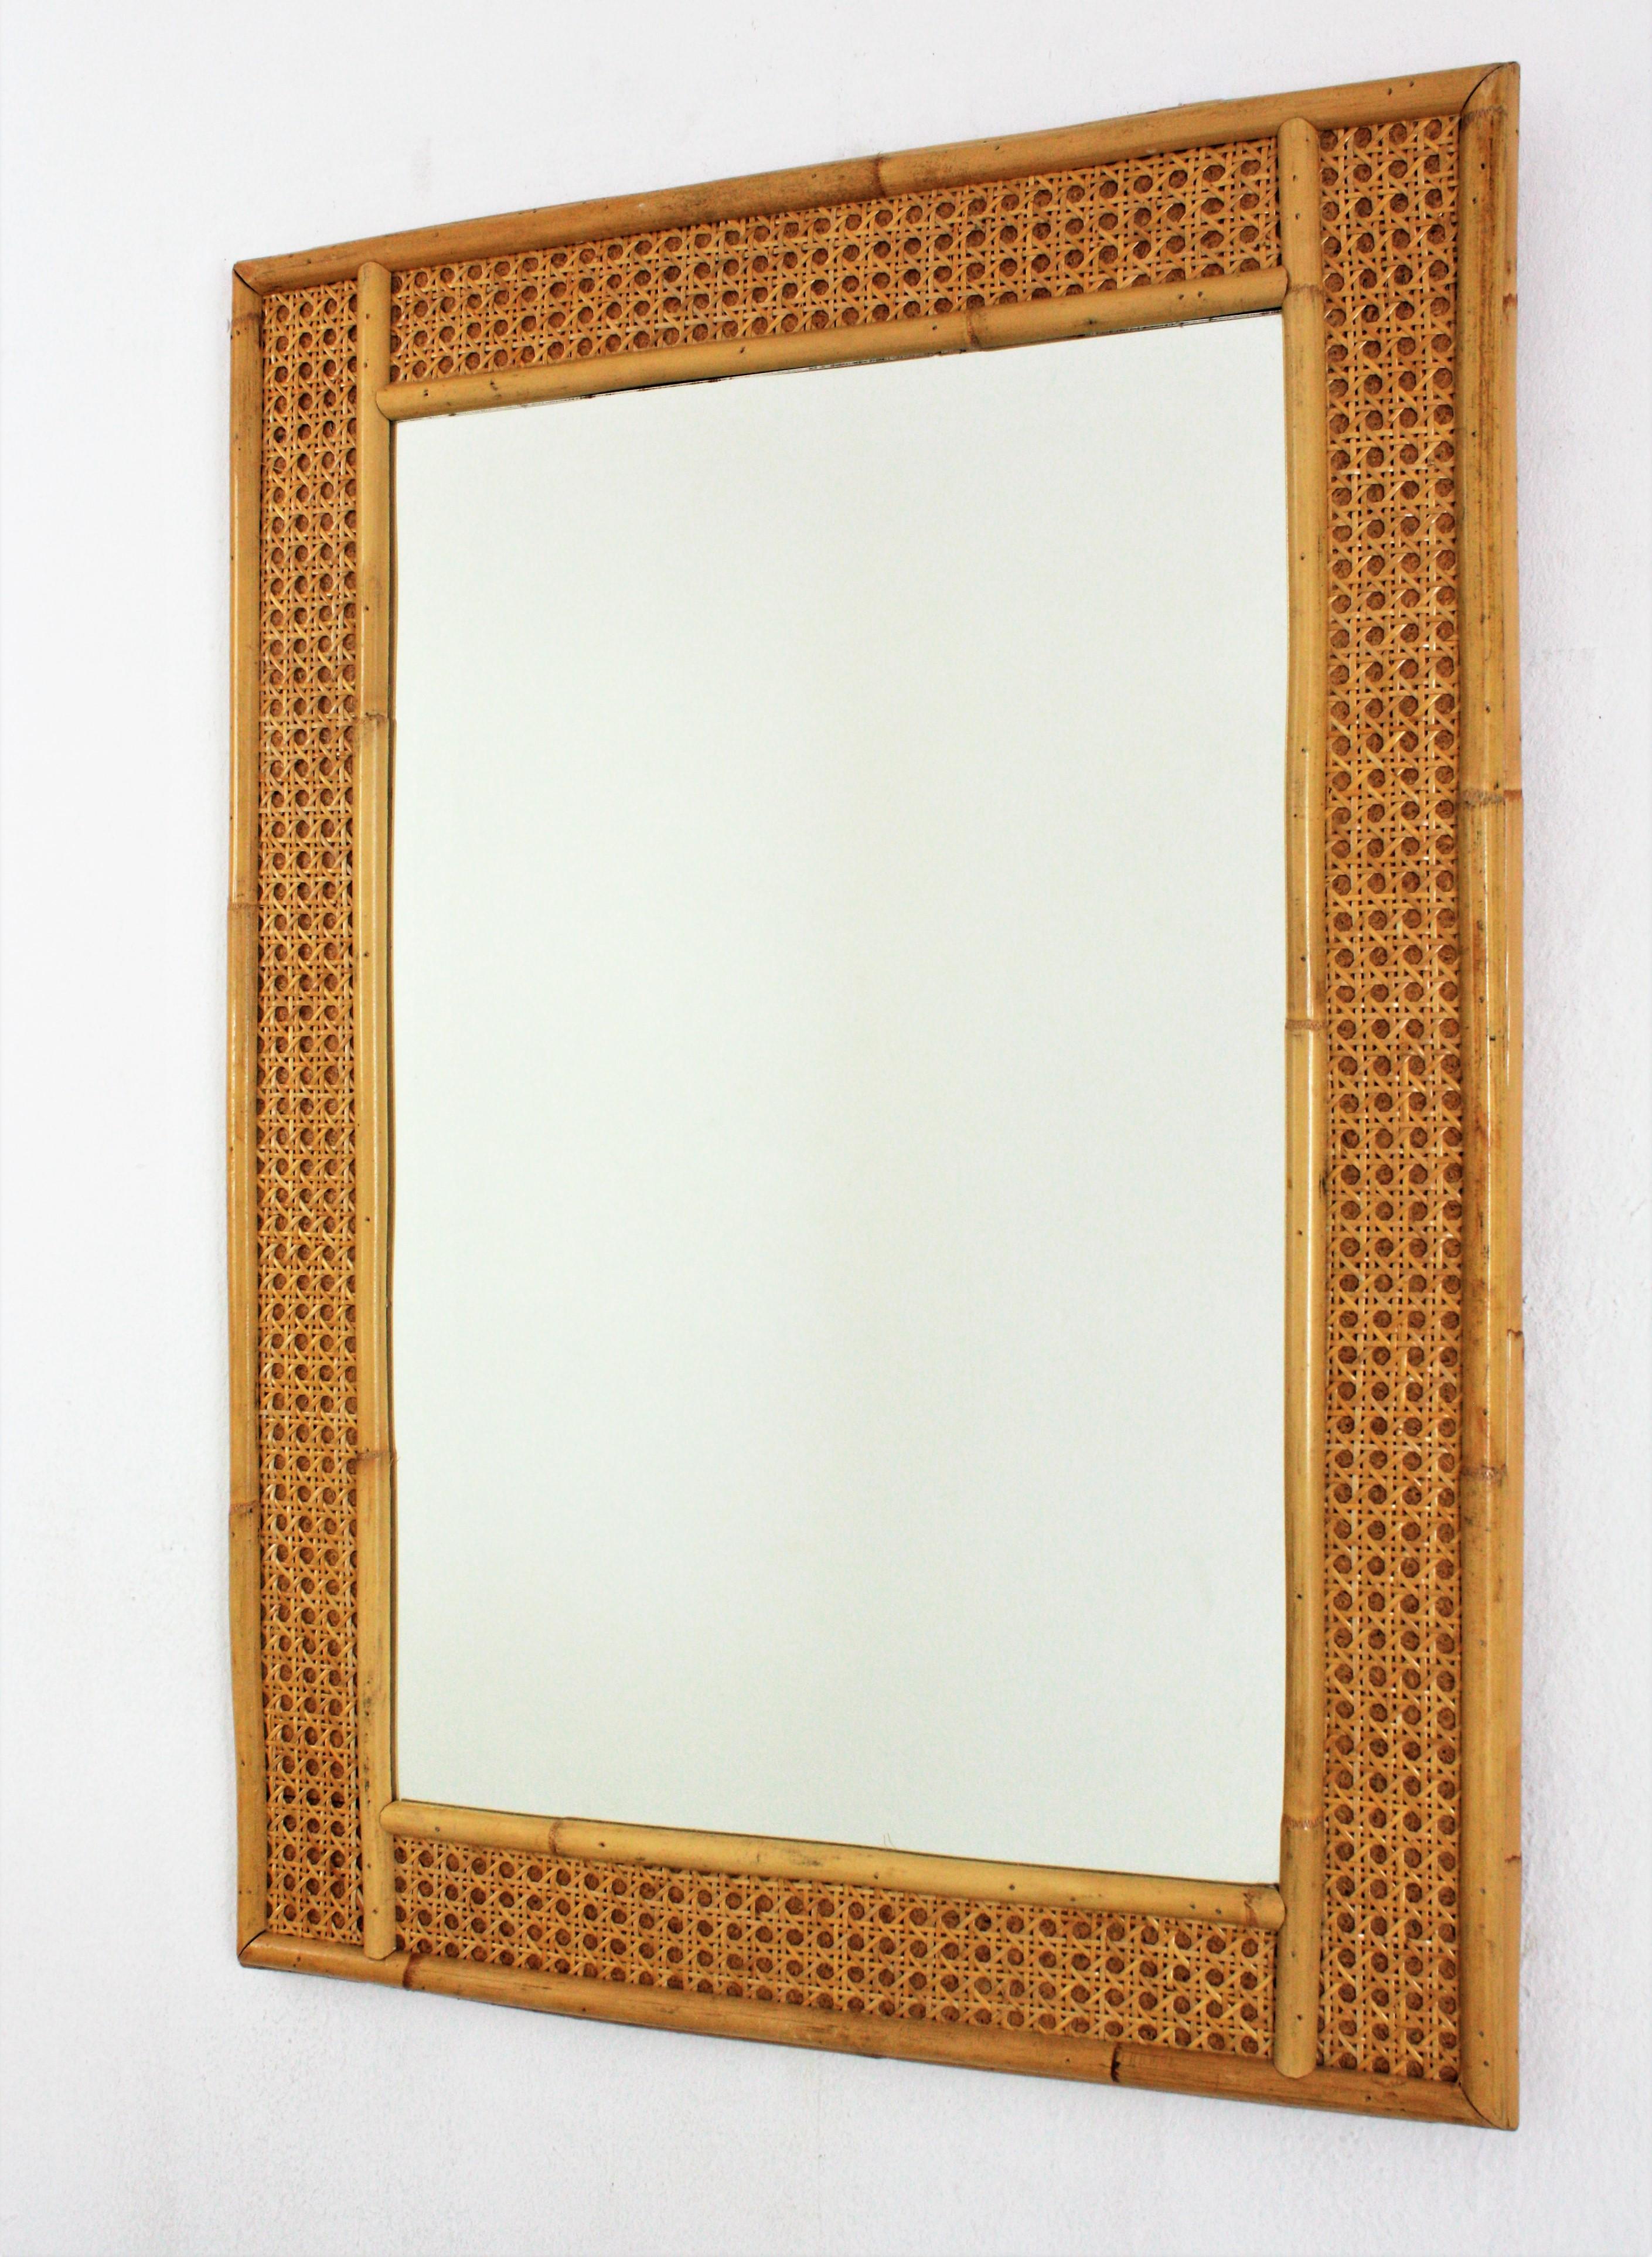 Eleganter Mid-Century Modern Spiegel aus Korbgeflecht und Bambus im Stil von Christian Dior und Gabriella Crespi.
Dieser rechteckige Spiegel aus Rattan, Weide und Bambus stammt aus den 1970er Jahren. Die Struktur aus Bambus mit geflochtener Mitte